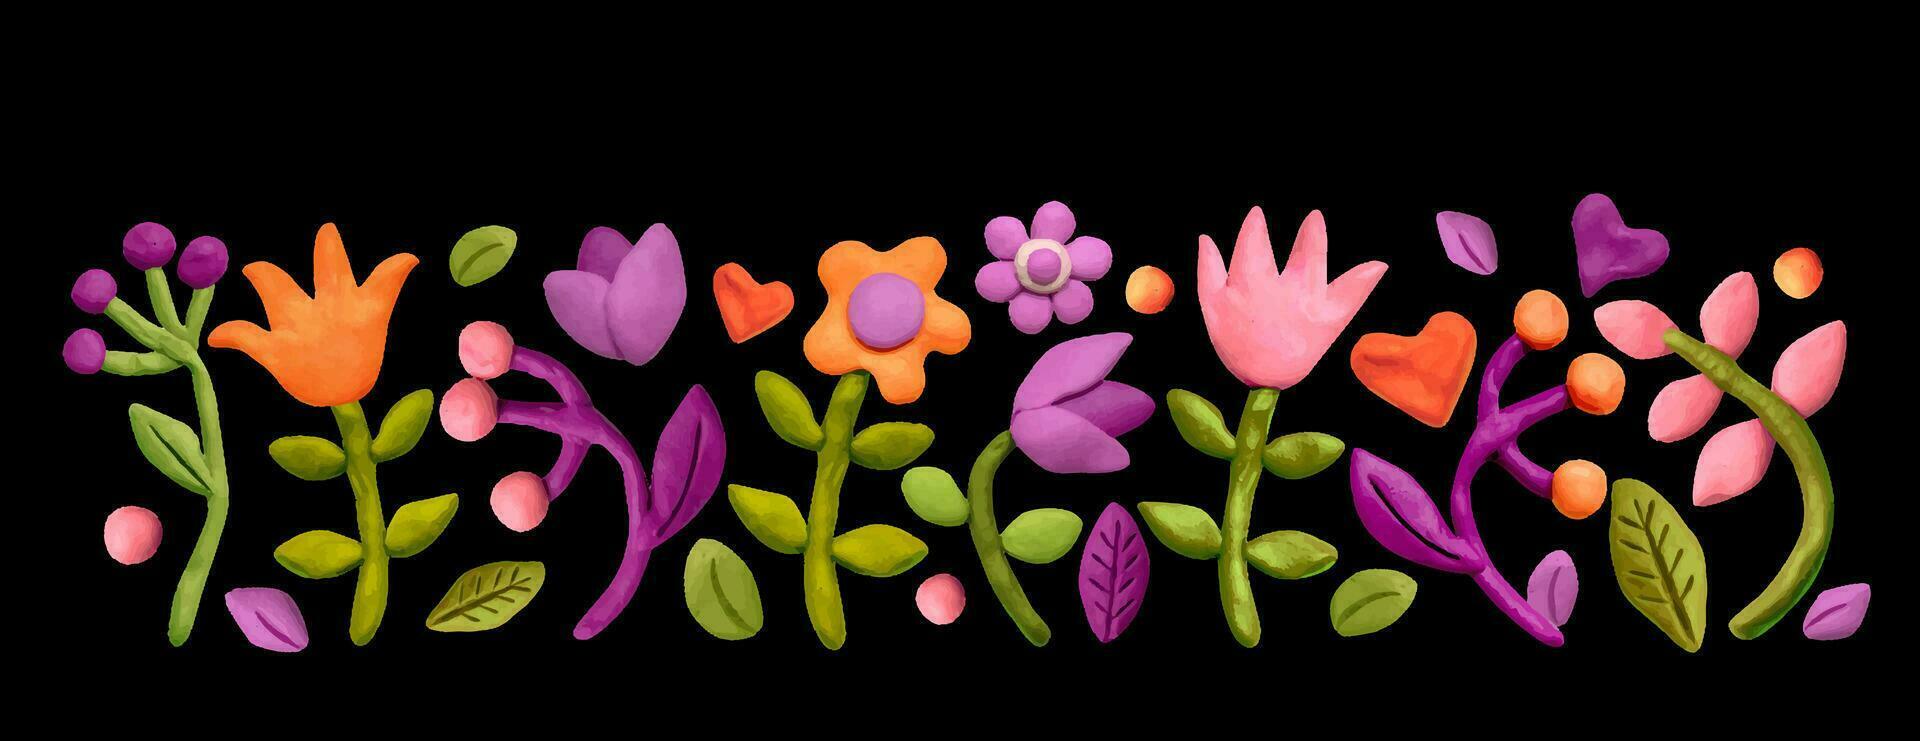 grens divers bloemen, bladeren, kruiden en plasticine harten. gekleurde plasticine klei 3d illustratie Aan zwart achtergrond, schattig deeg vorm vector